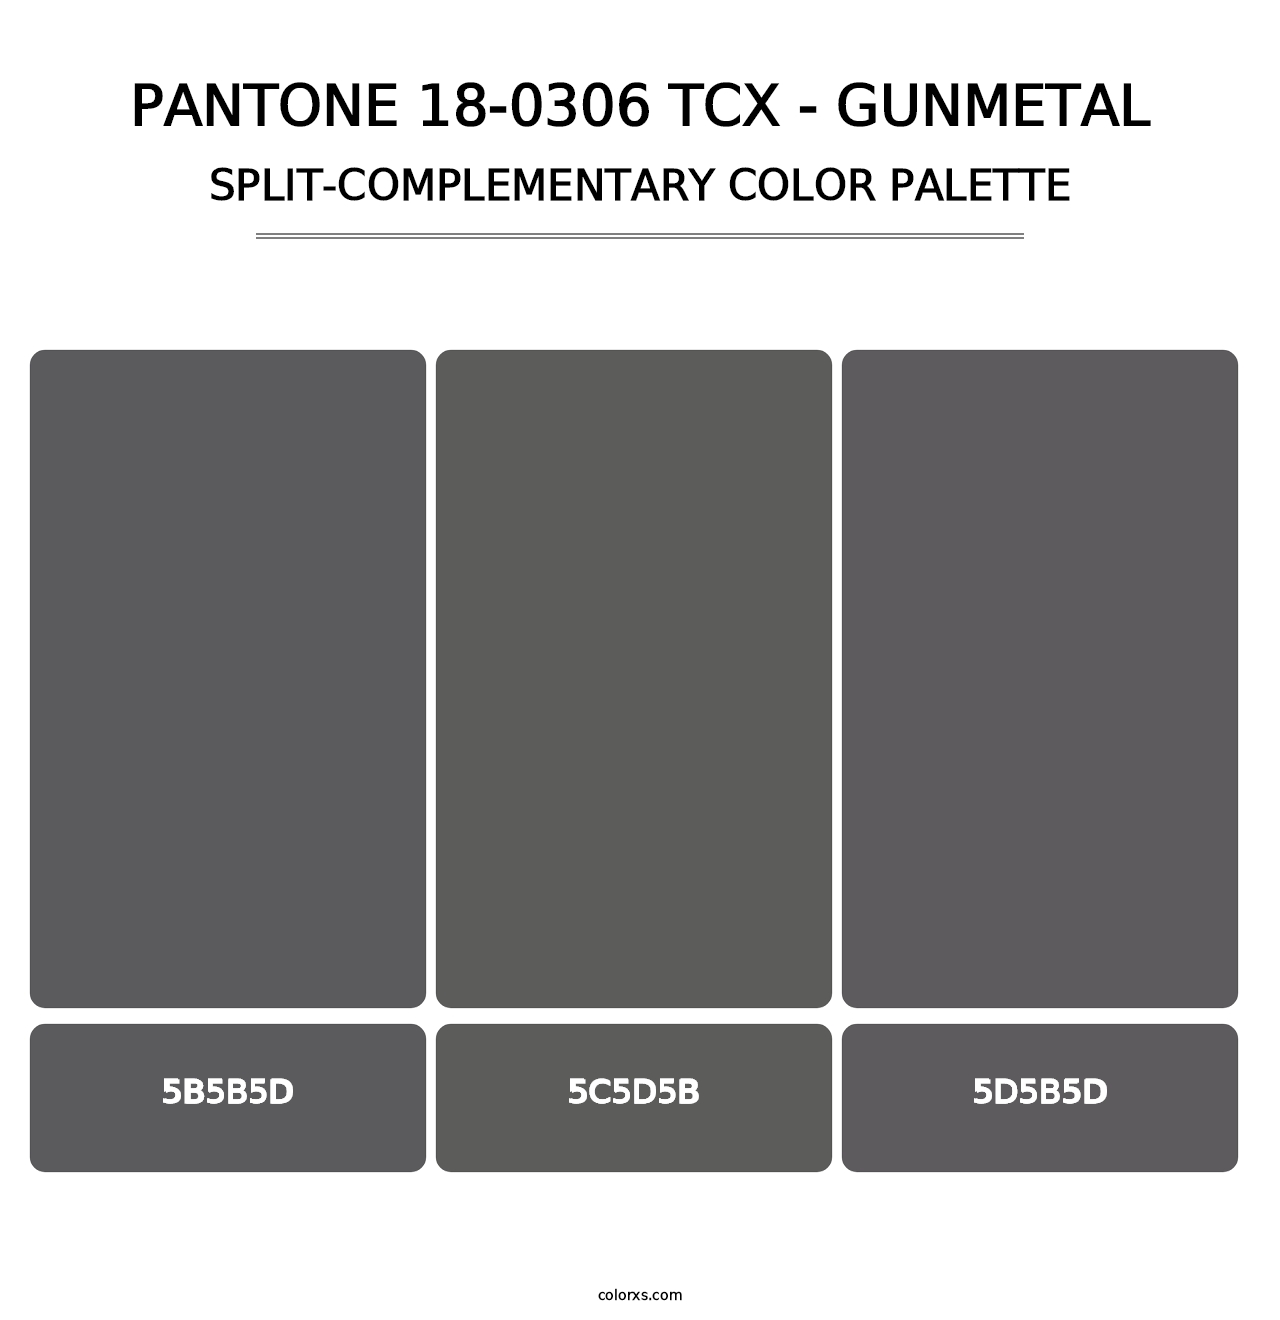 PANTONE 18-0306 TCX - Gunmetal - Split-Complementary Color Palette